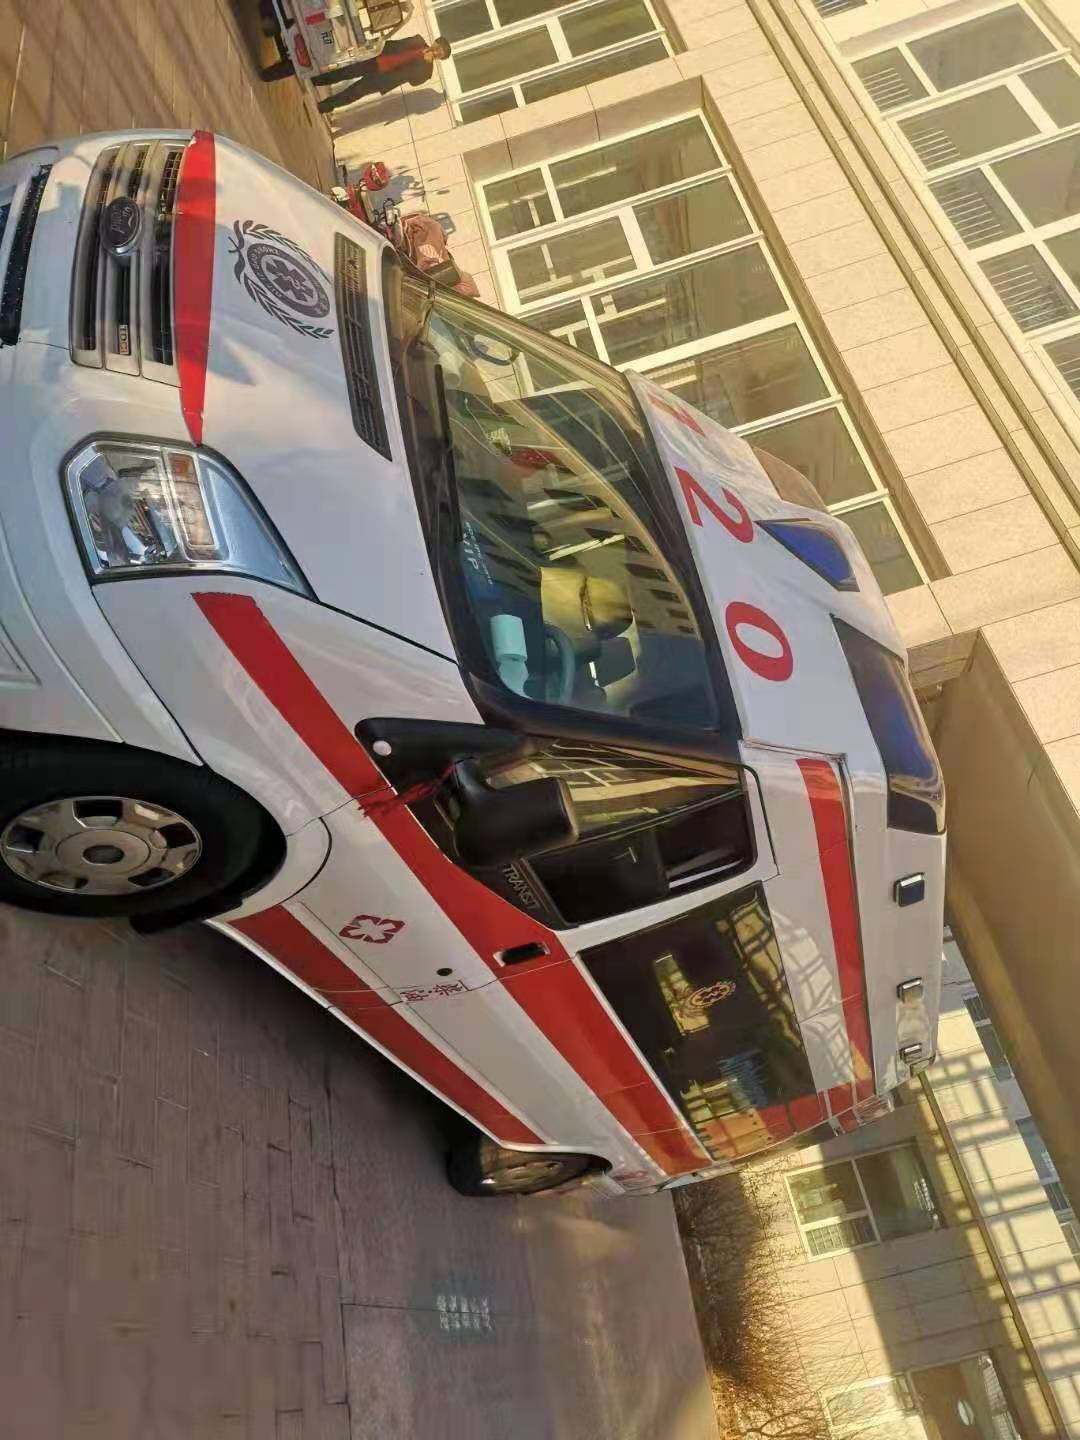 益阳红十字血液中心120救护车出租医帮扶公司